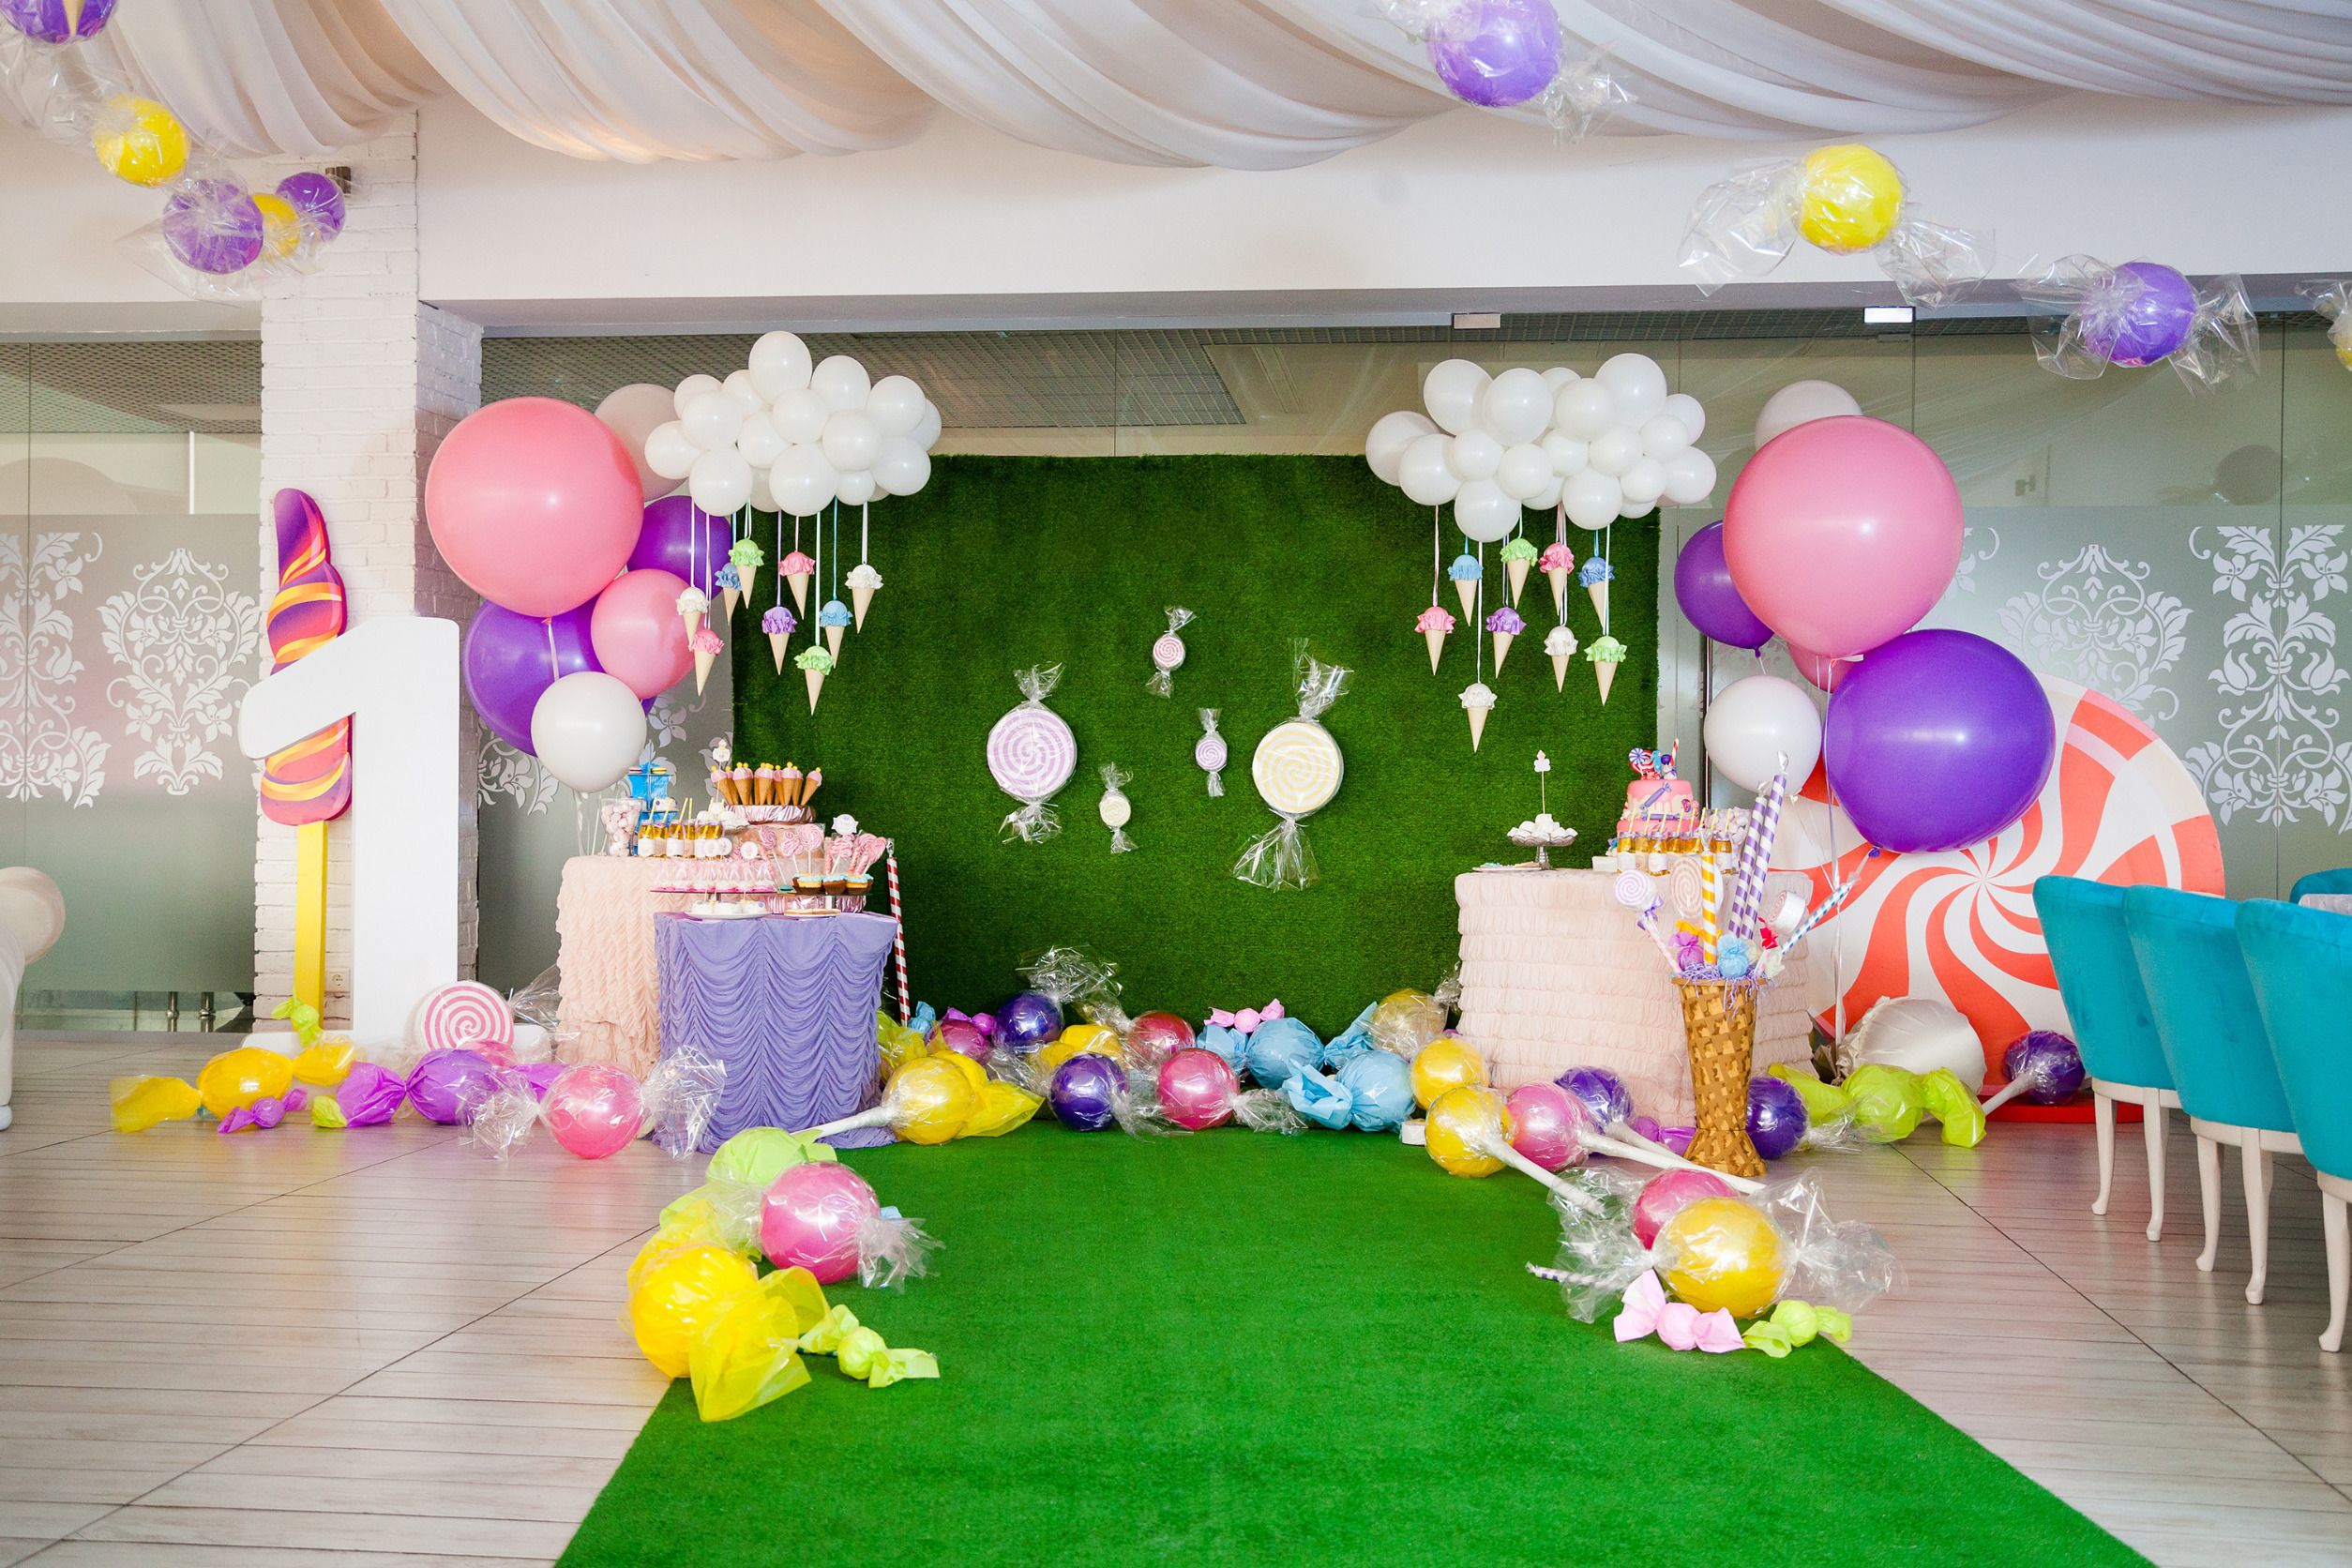 Das Bild zeigt einen Raum, geschmückt mit mehrfarbigen Ballons in unterschiedlichen Größen, sowie Luftballons in Cellophan verpackt, die Bonbons ähneln. Außerdem Eiswaffelattrappen an Weißen Ballons in Wolkenform. Auf den Tischen stehen Geburtstagskuchen und Schaumwaffeln sowie weitere Süßigkeiten bereit.